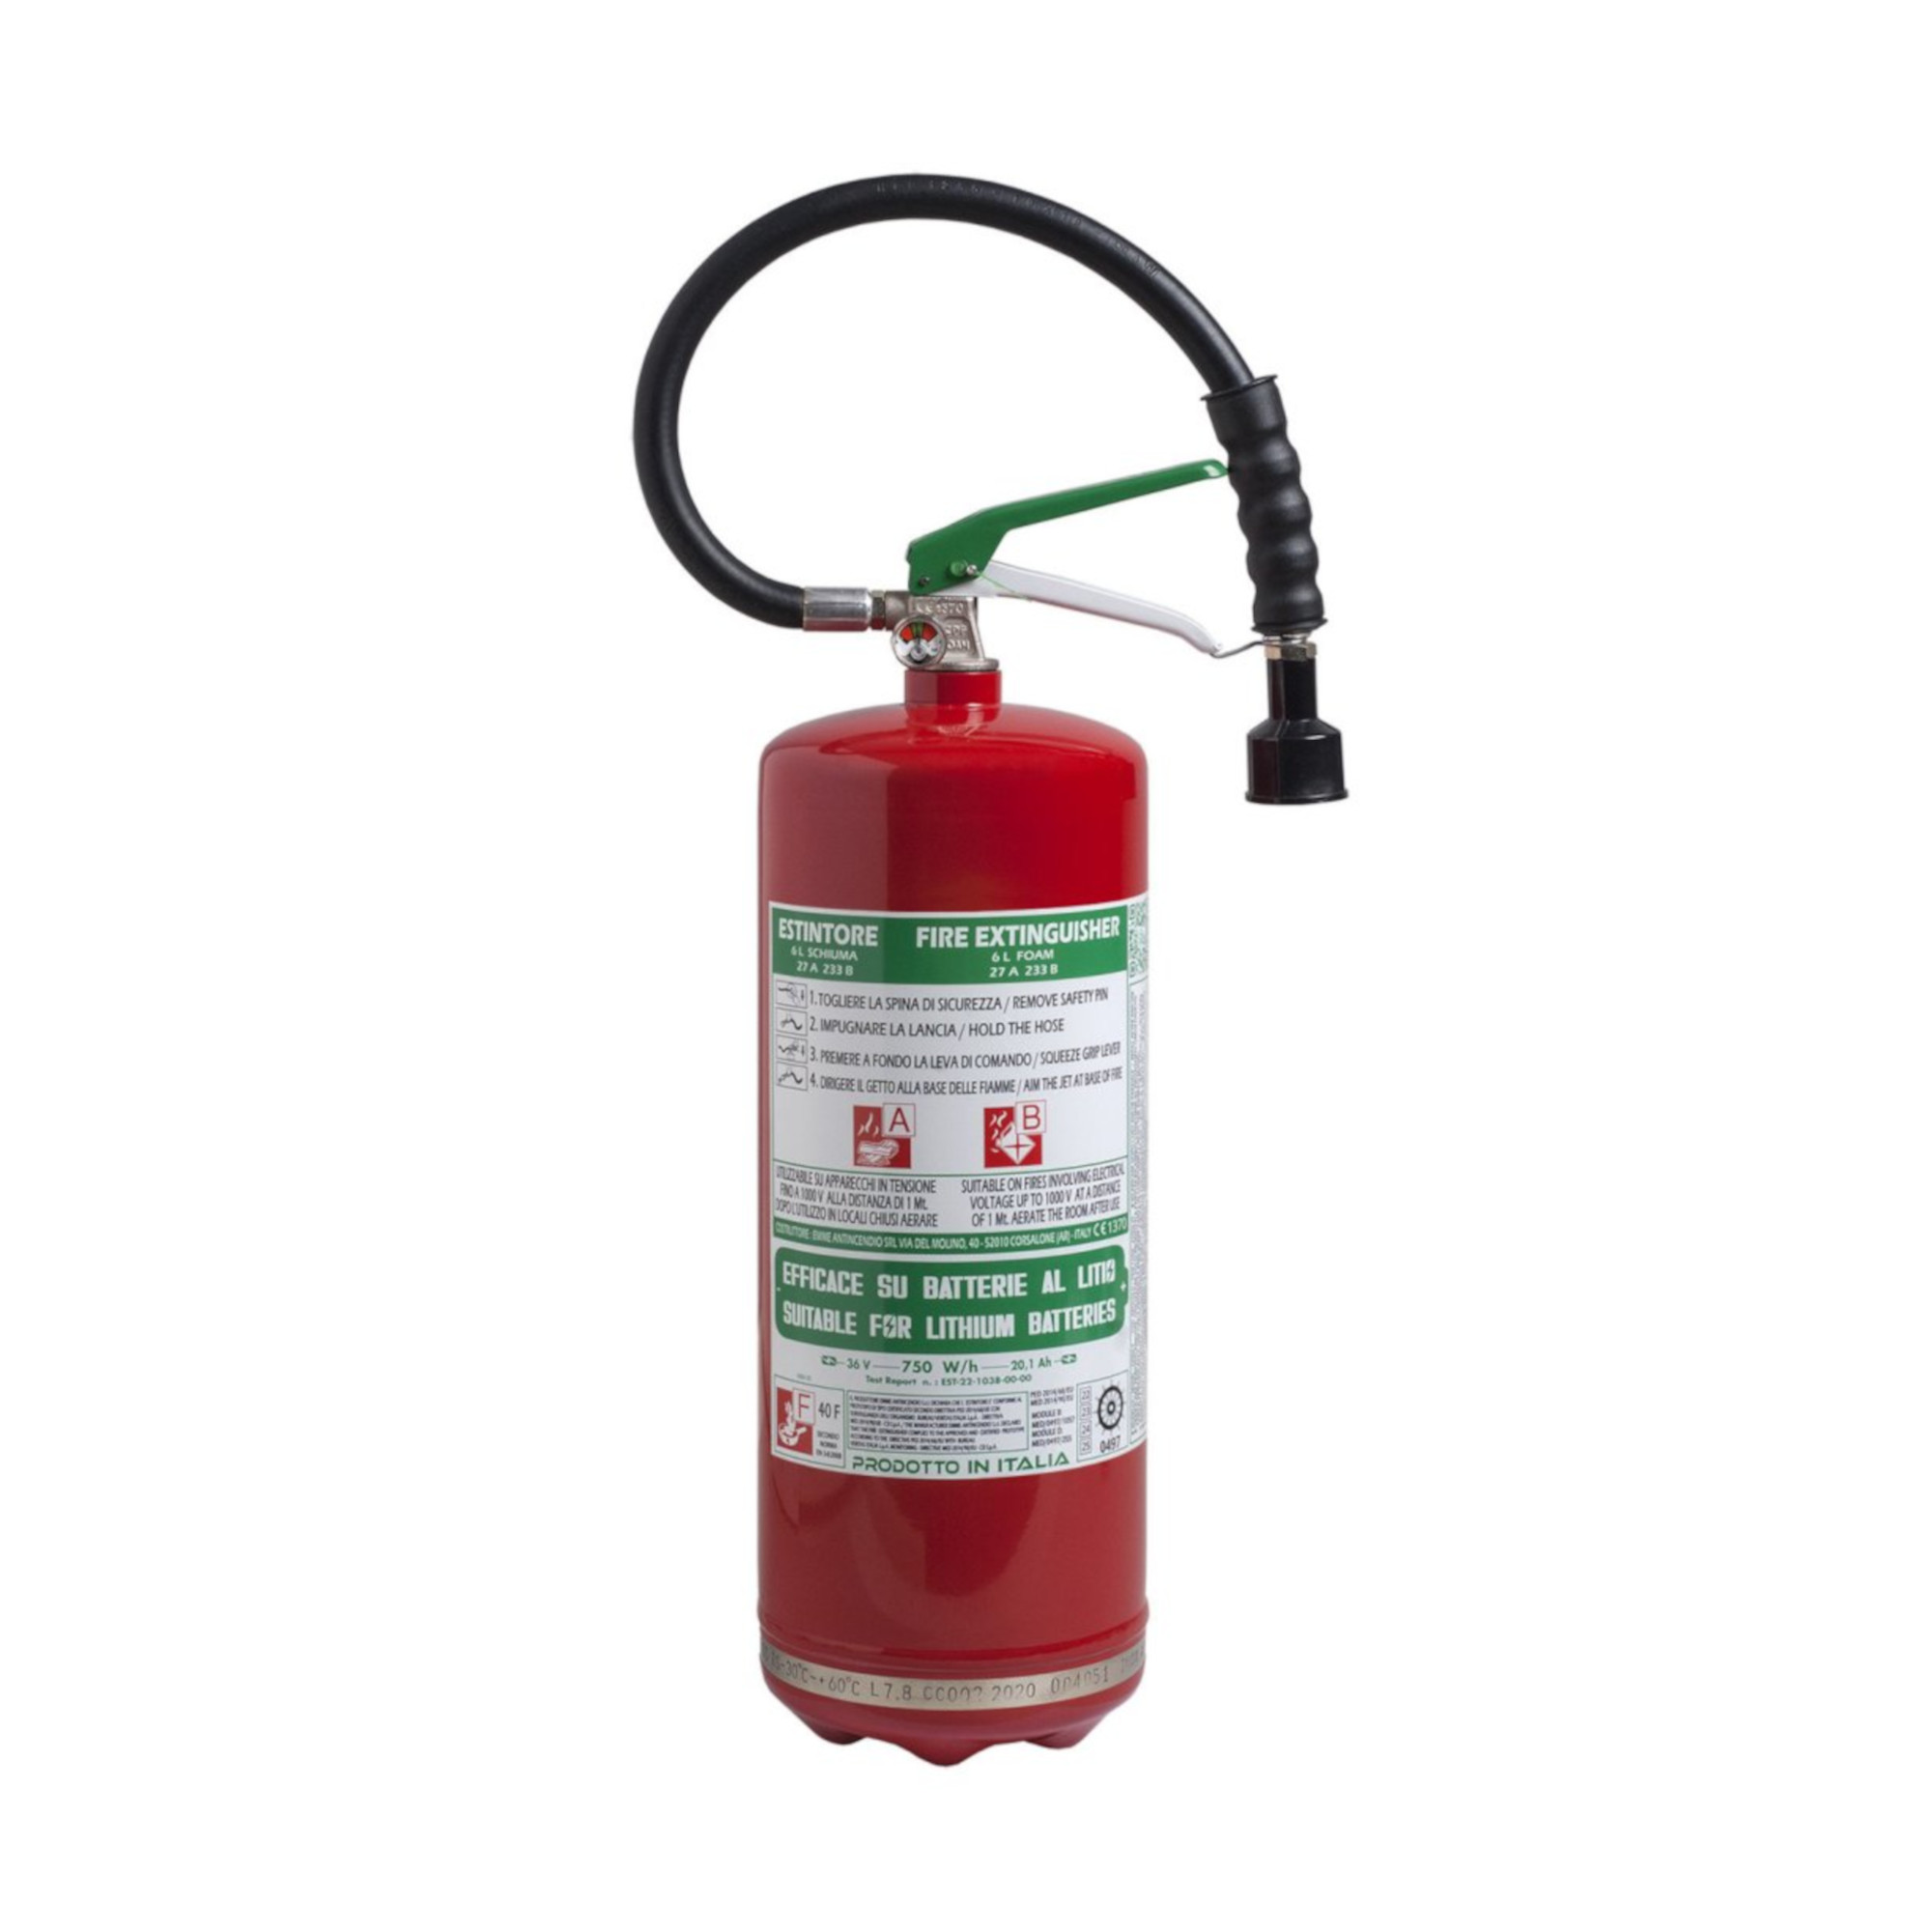 Feuerlöscher Schaum DOLOMITI lt 6 Inoxbehälter - 27A 233B 40F (geeignet für Litium Batterien)